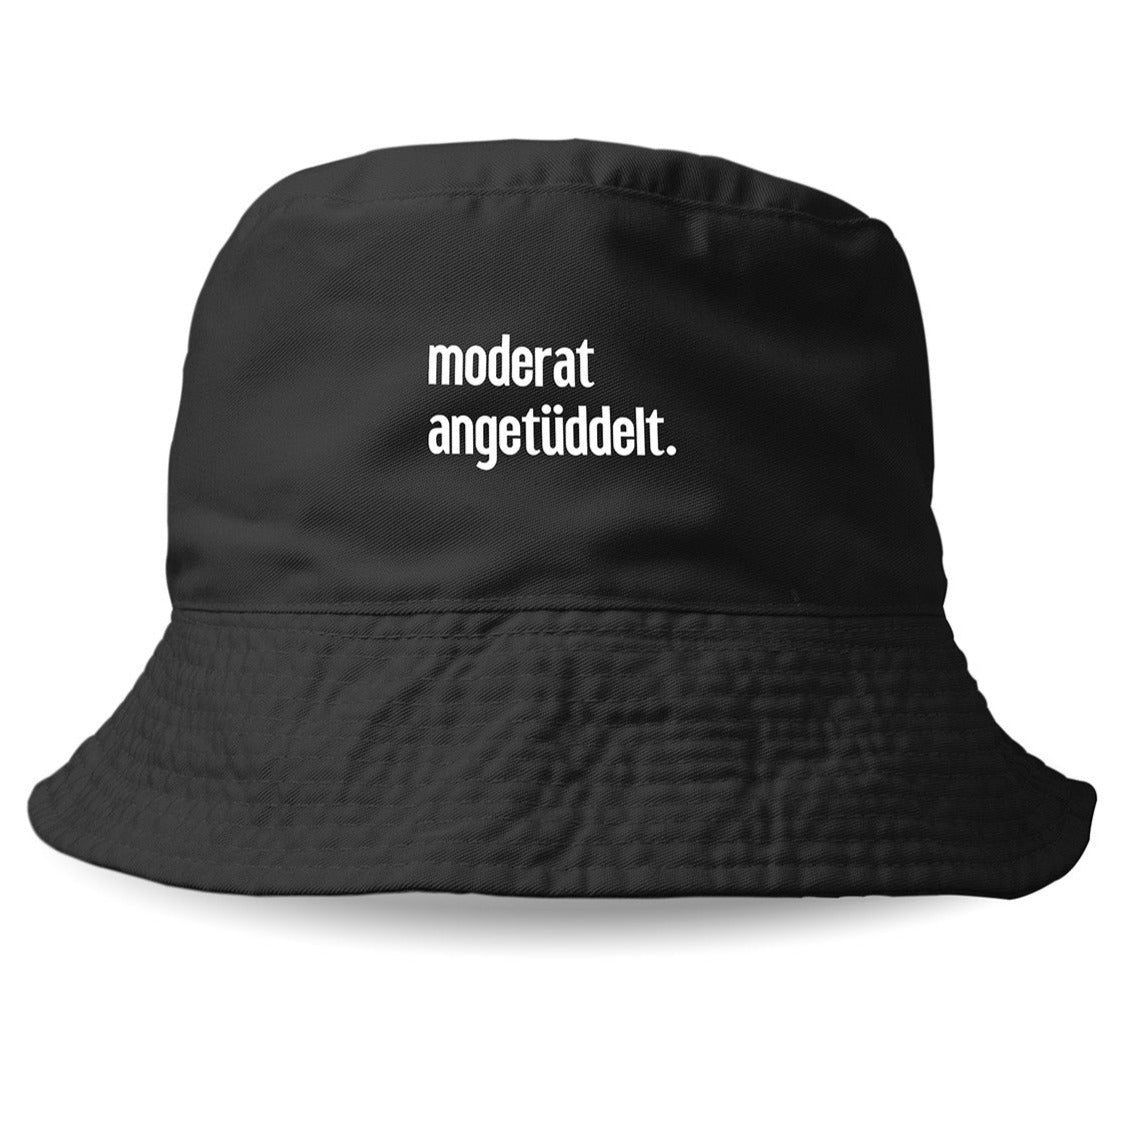 MODERAT ANGETÜDDELT - Bucket Hat